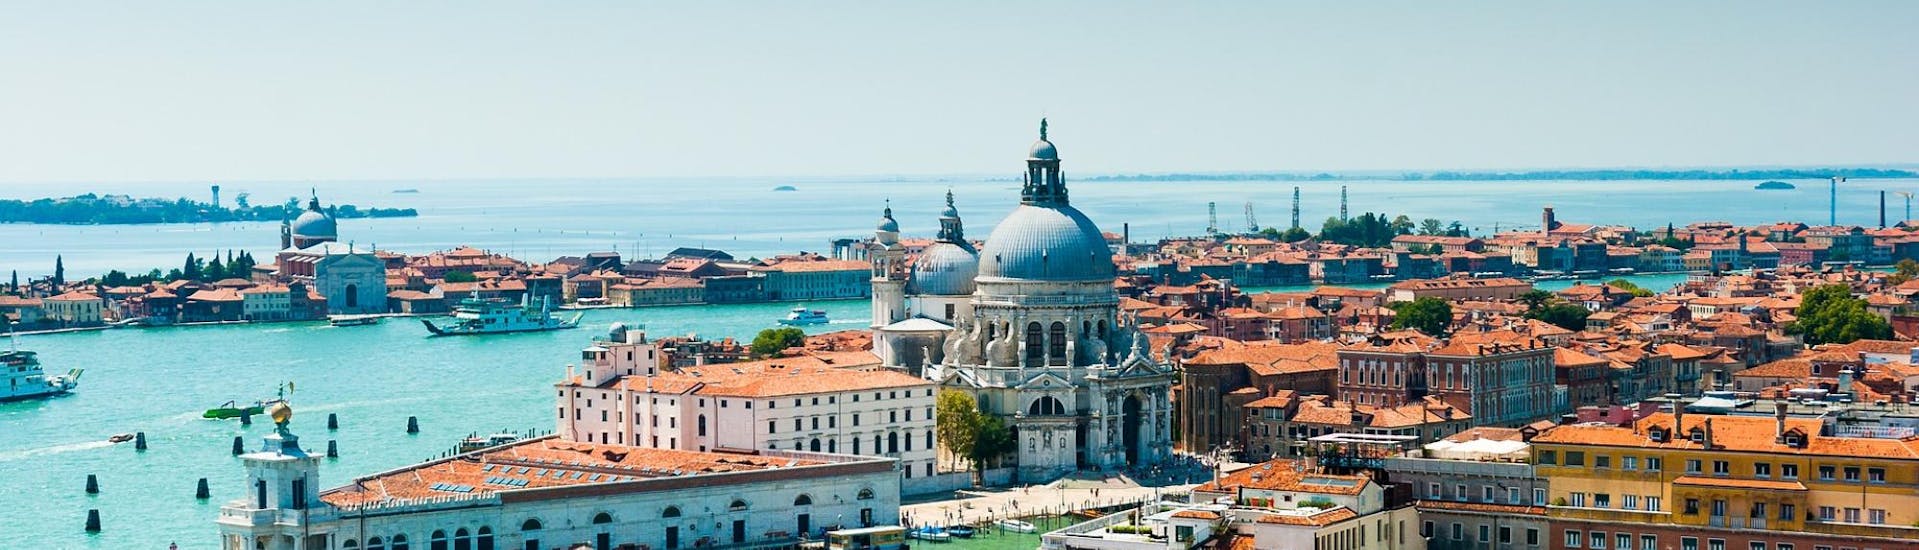 Vogelperspektive der Basilika Sant Mark, die Ihr während der Bootsfahrt nach Murano & Burano mit Nachmittag in Venedig mit Il Doge di Venezia sehen könnt.